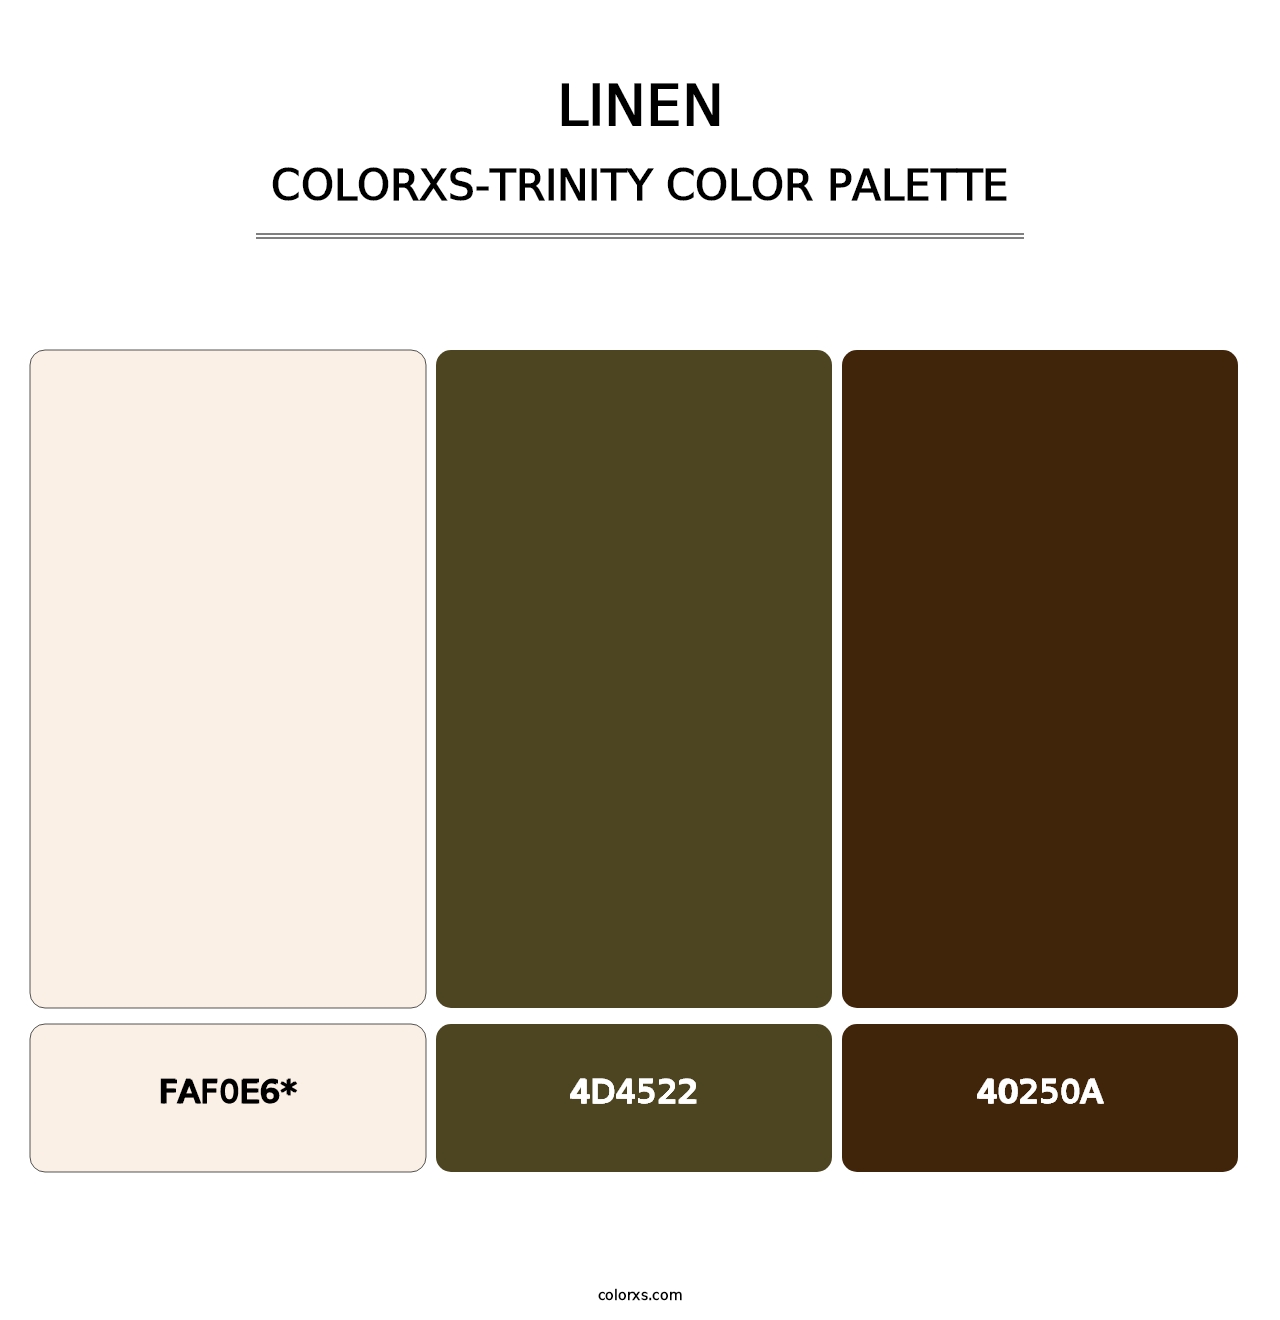 Linen - Colorxs Trinity Palette